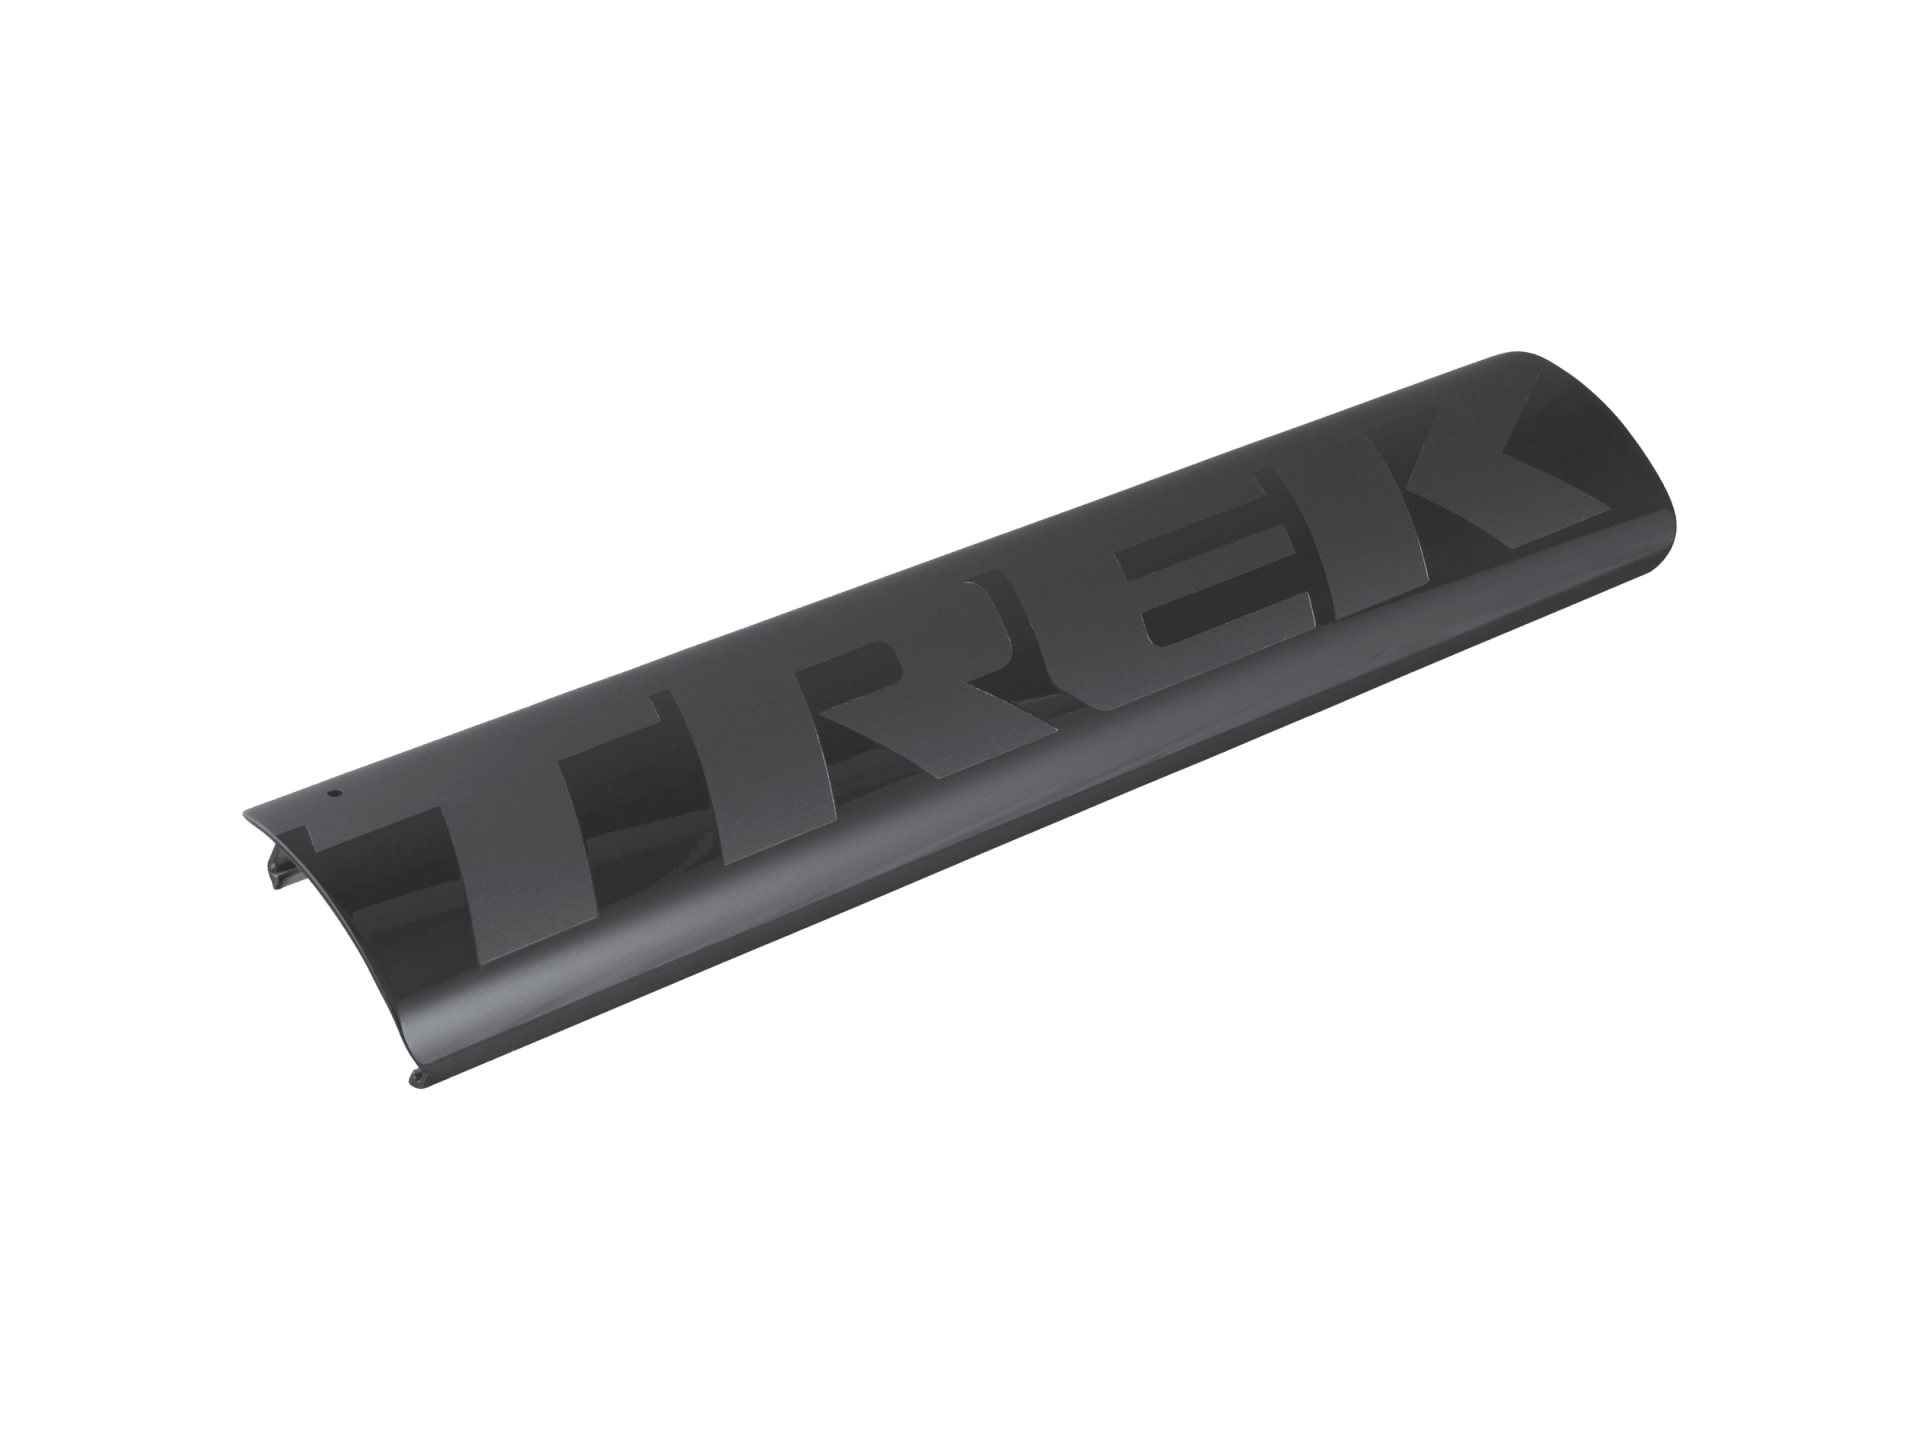 Trek 2020-2021 Rail 29 Carbon Paint Match Battery Covers